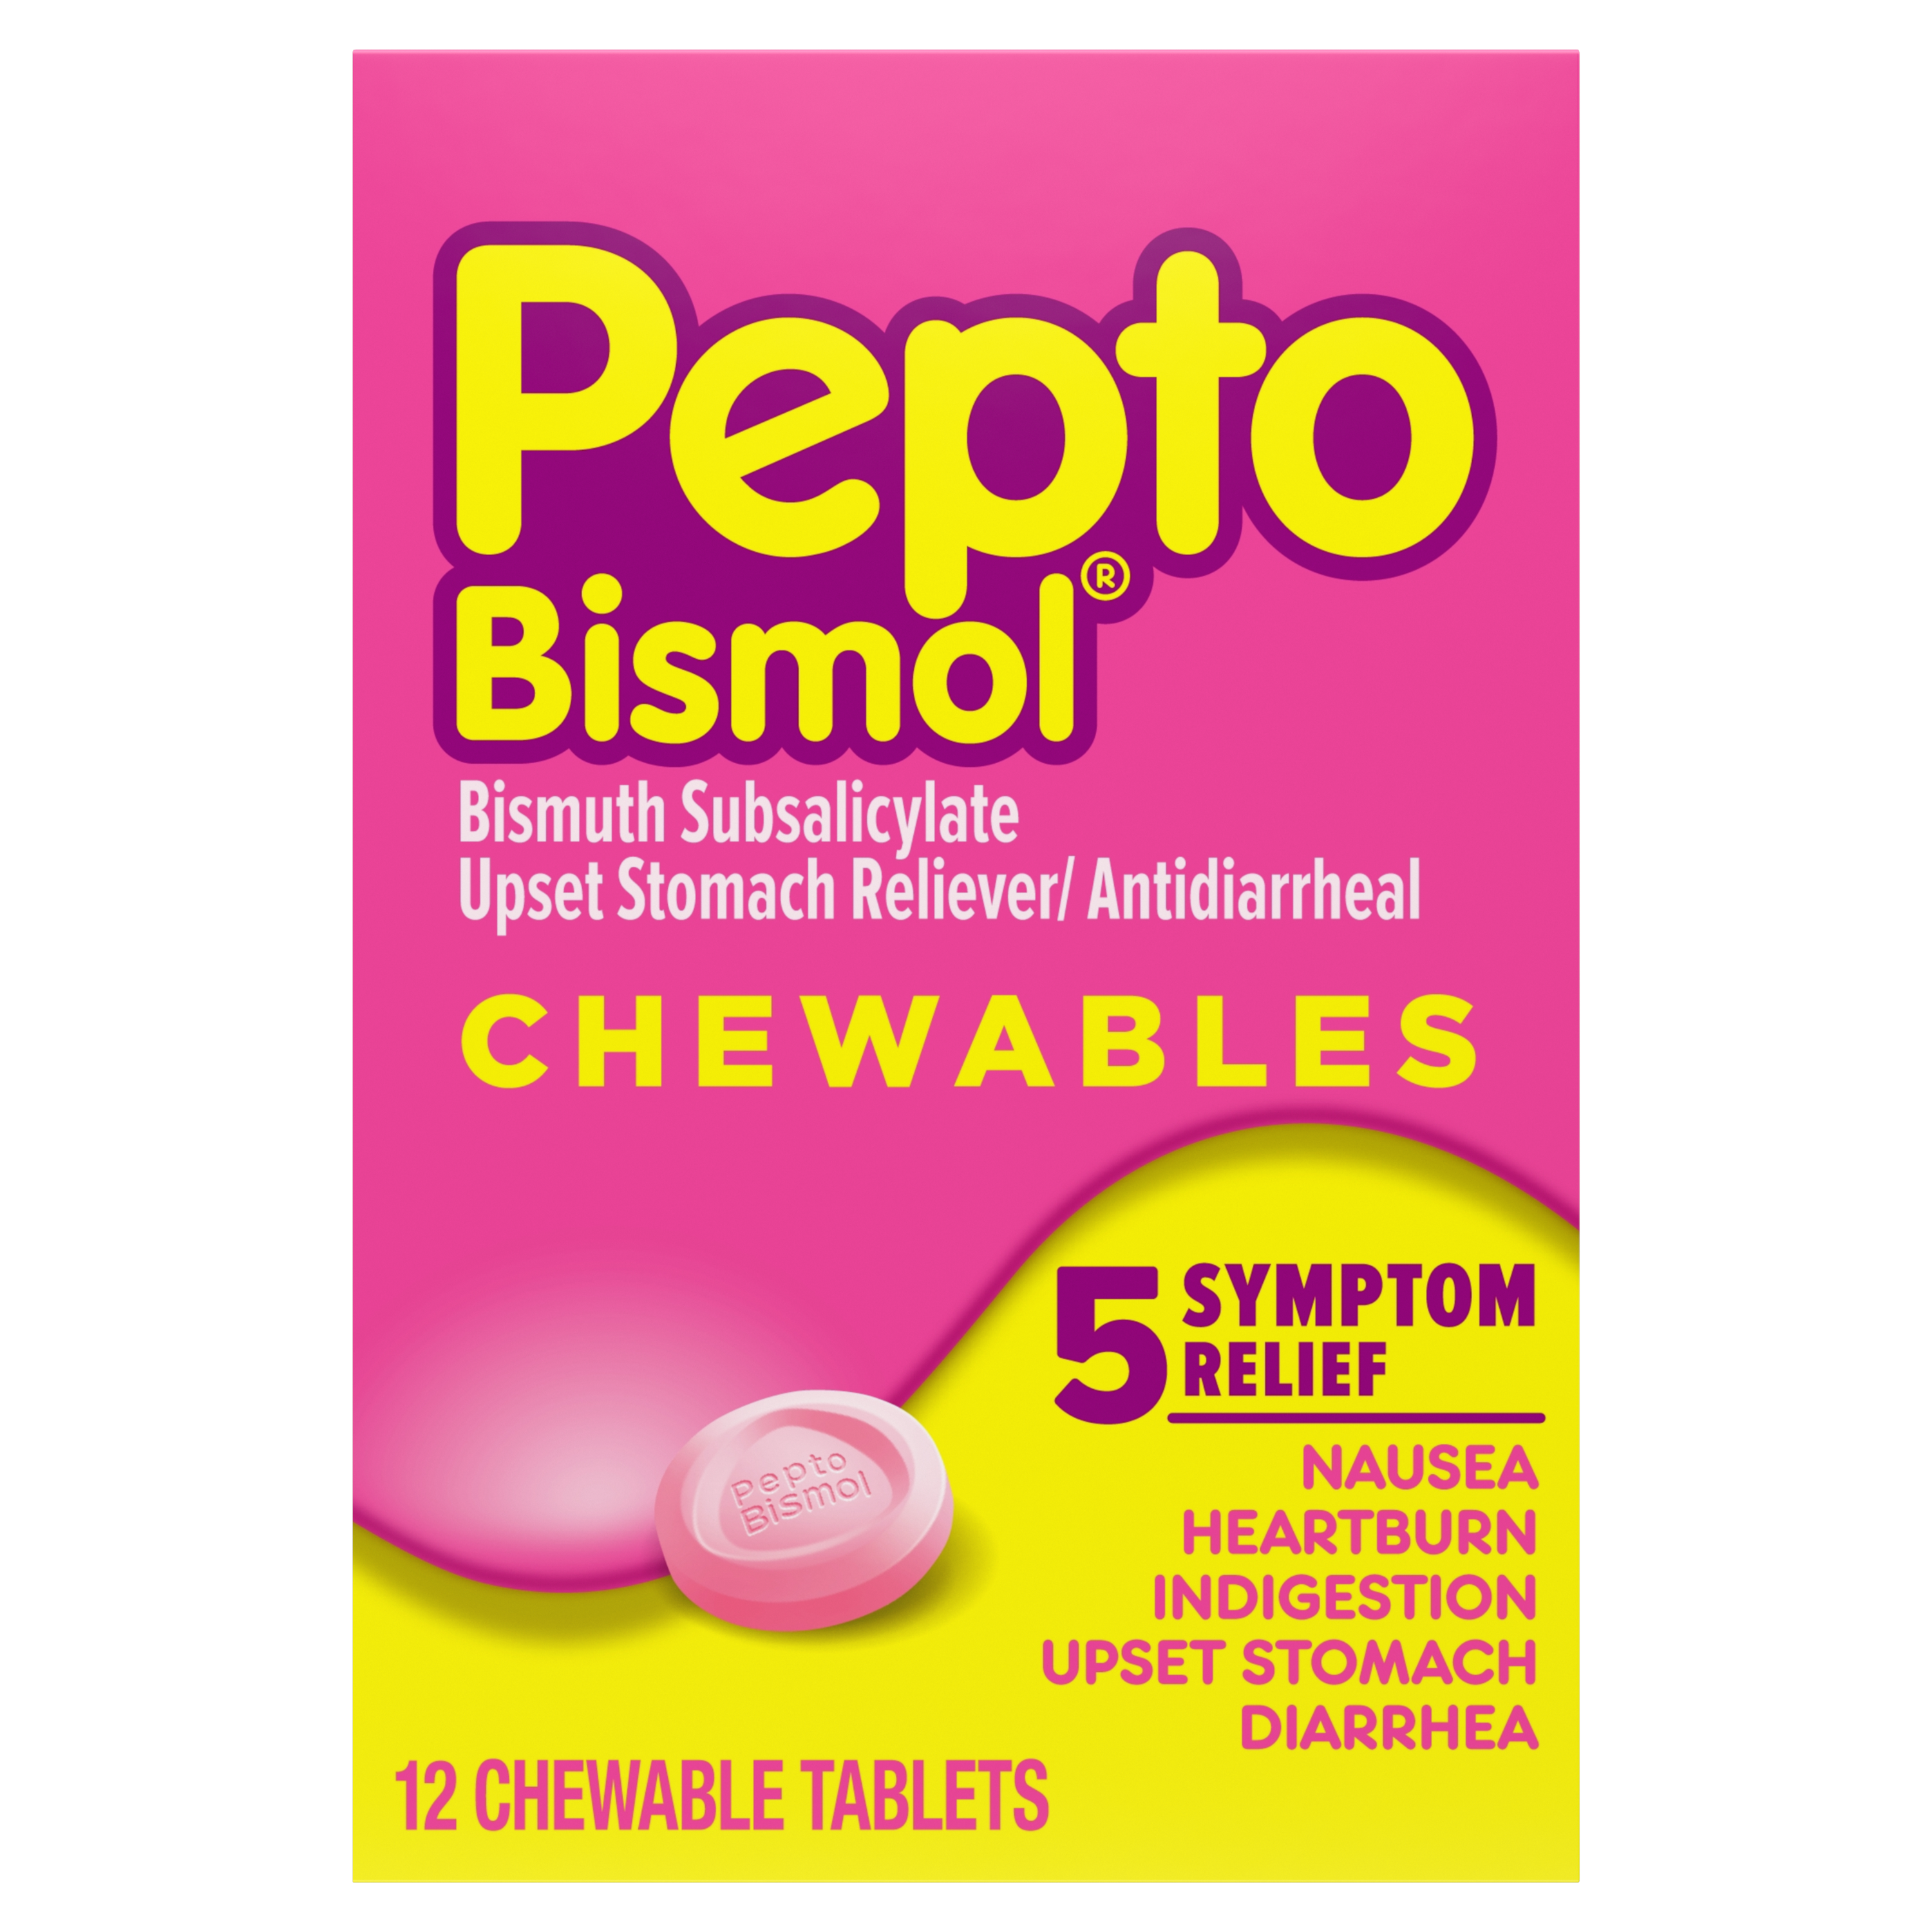 Pepto Bismol Tablet Dosage Chart